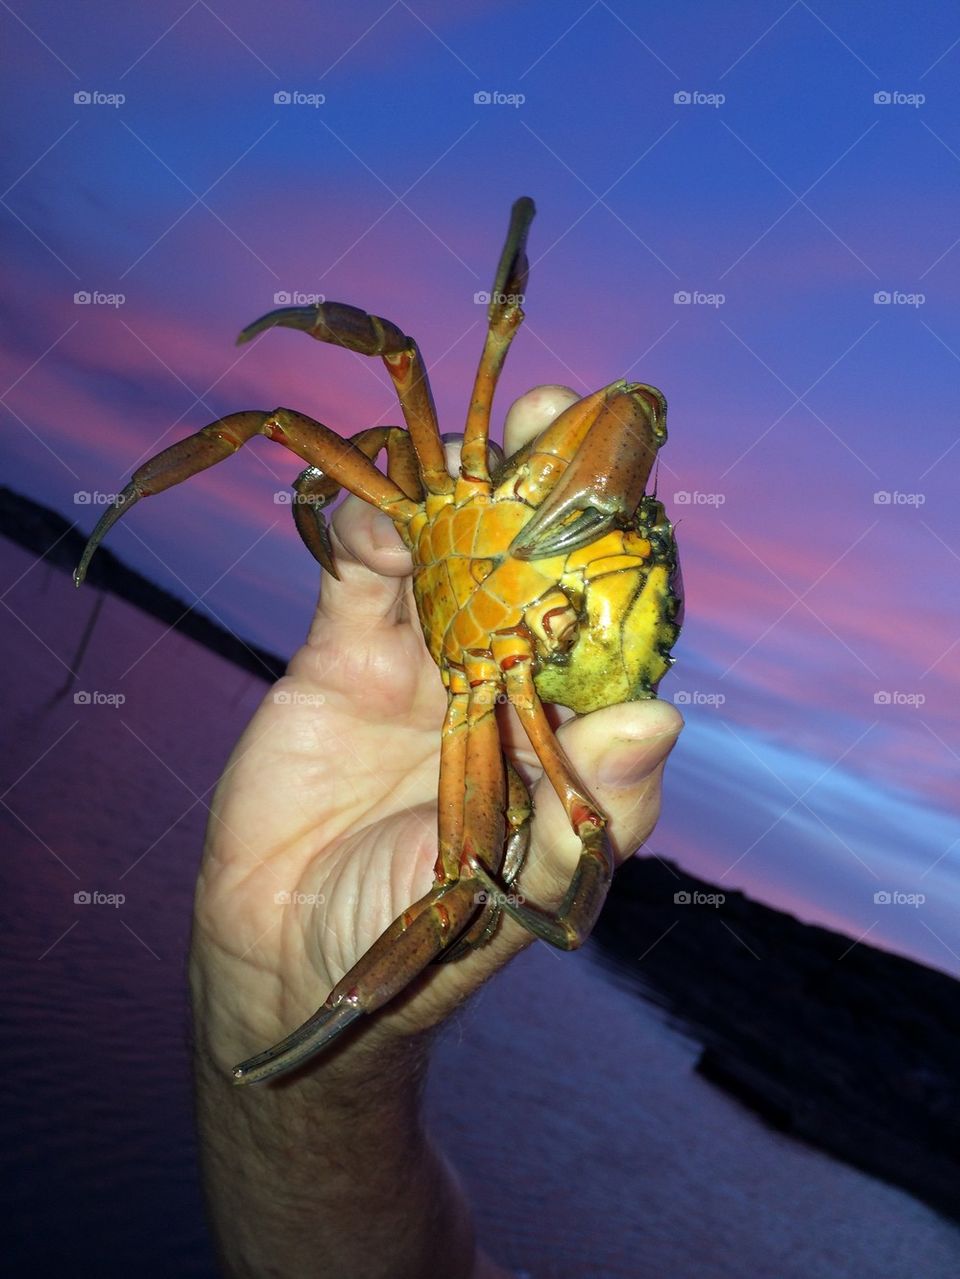 Crab fishing